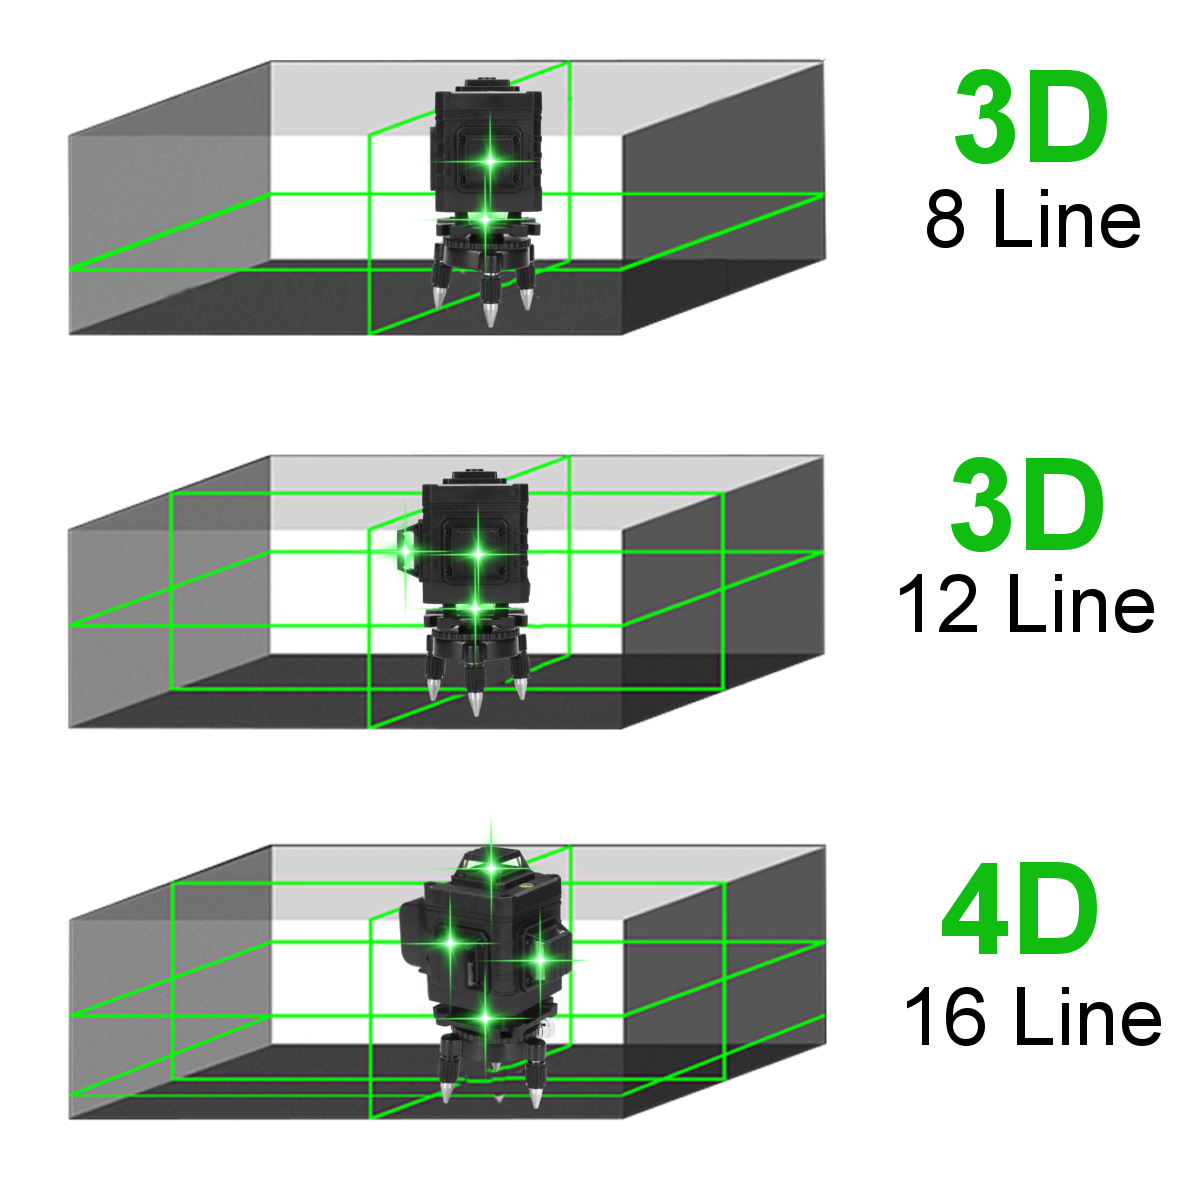 16128-Line--4D-360deg-Horizontal-Vertical-Cross-Green-Light-Laser-Level-Self-Leveling-Measure-Super--1869654-2